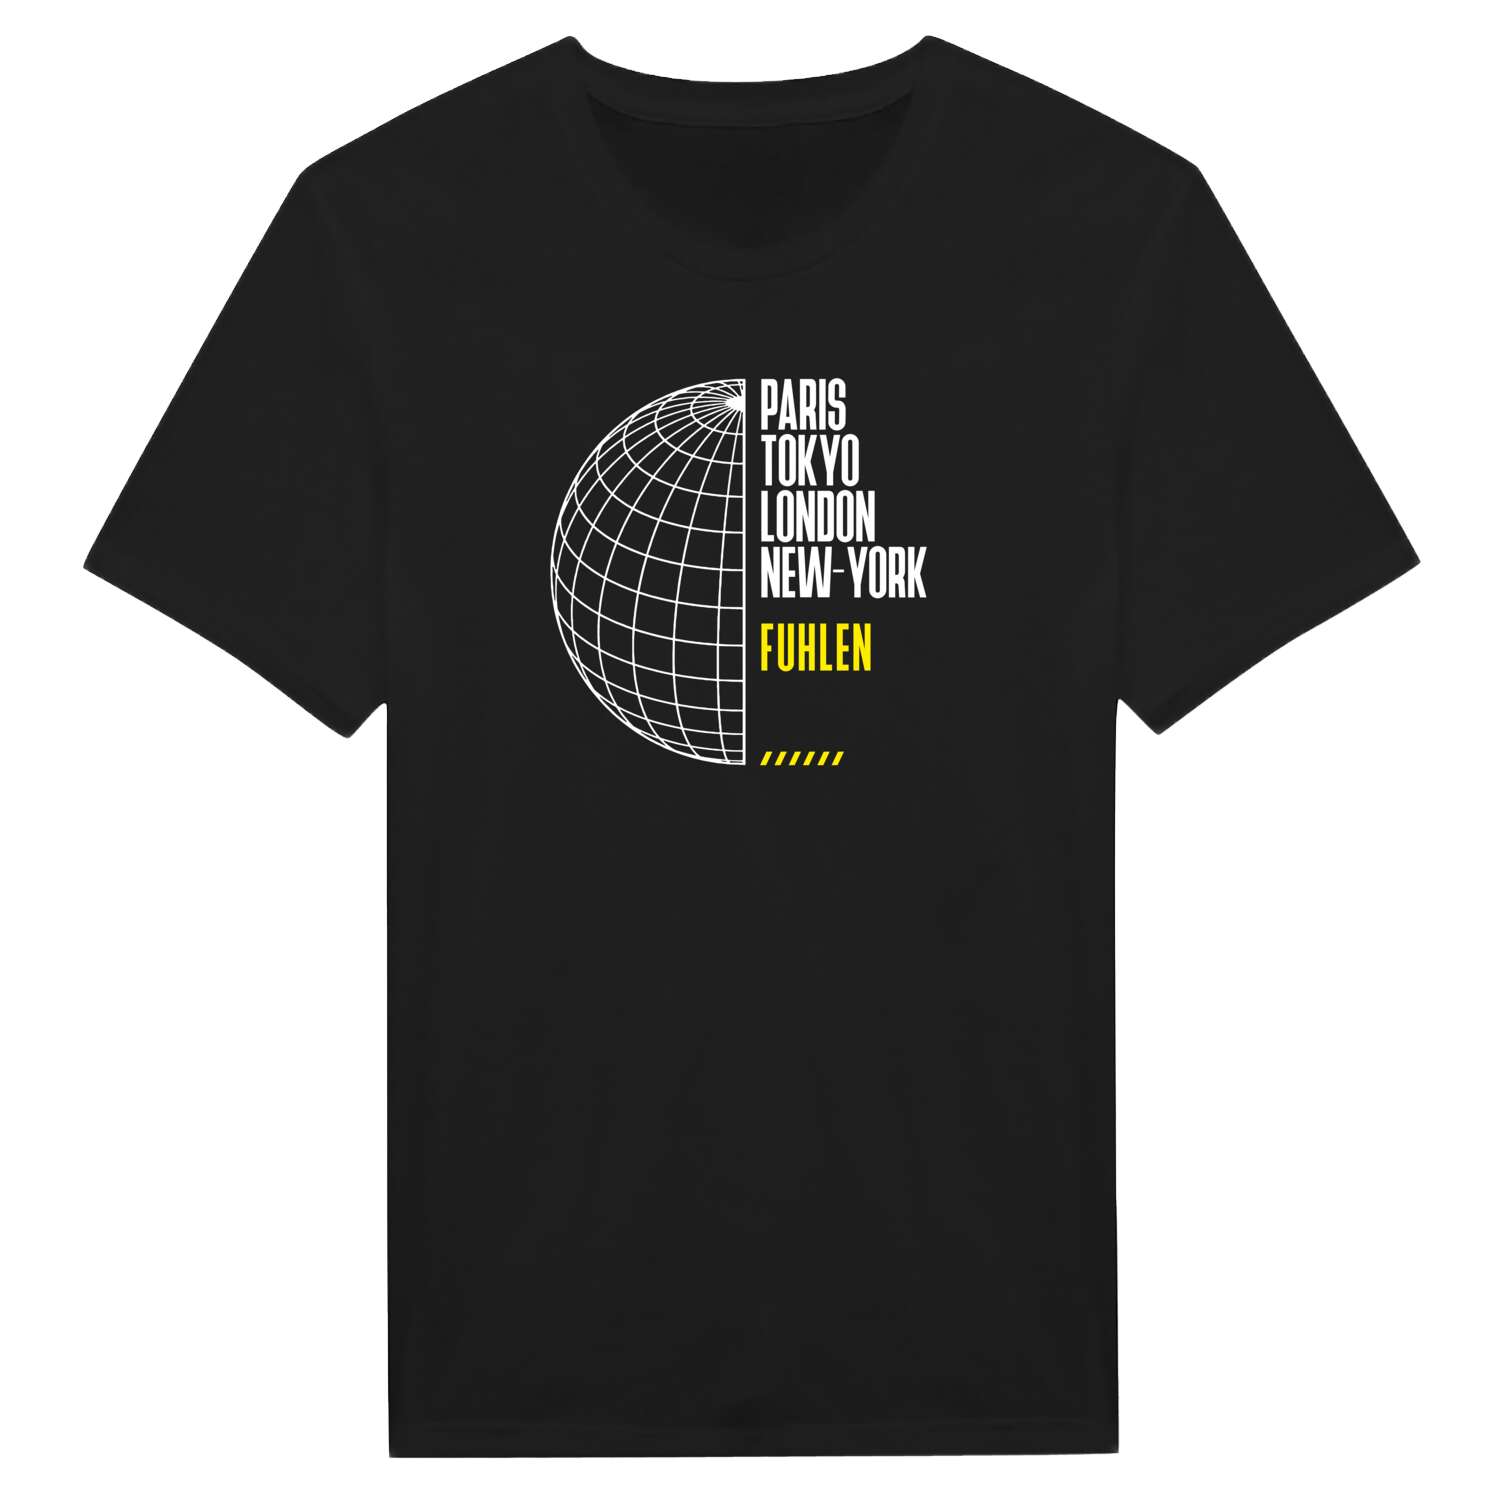 Fuhlen T-Shirt »Paris Tokyo London«